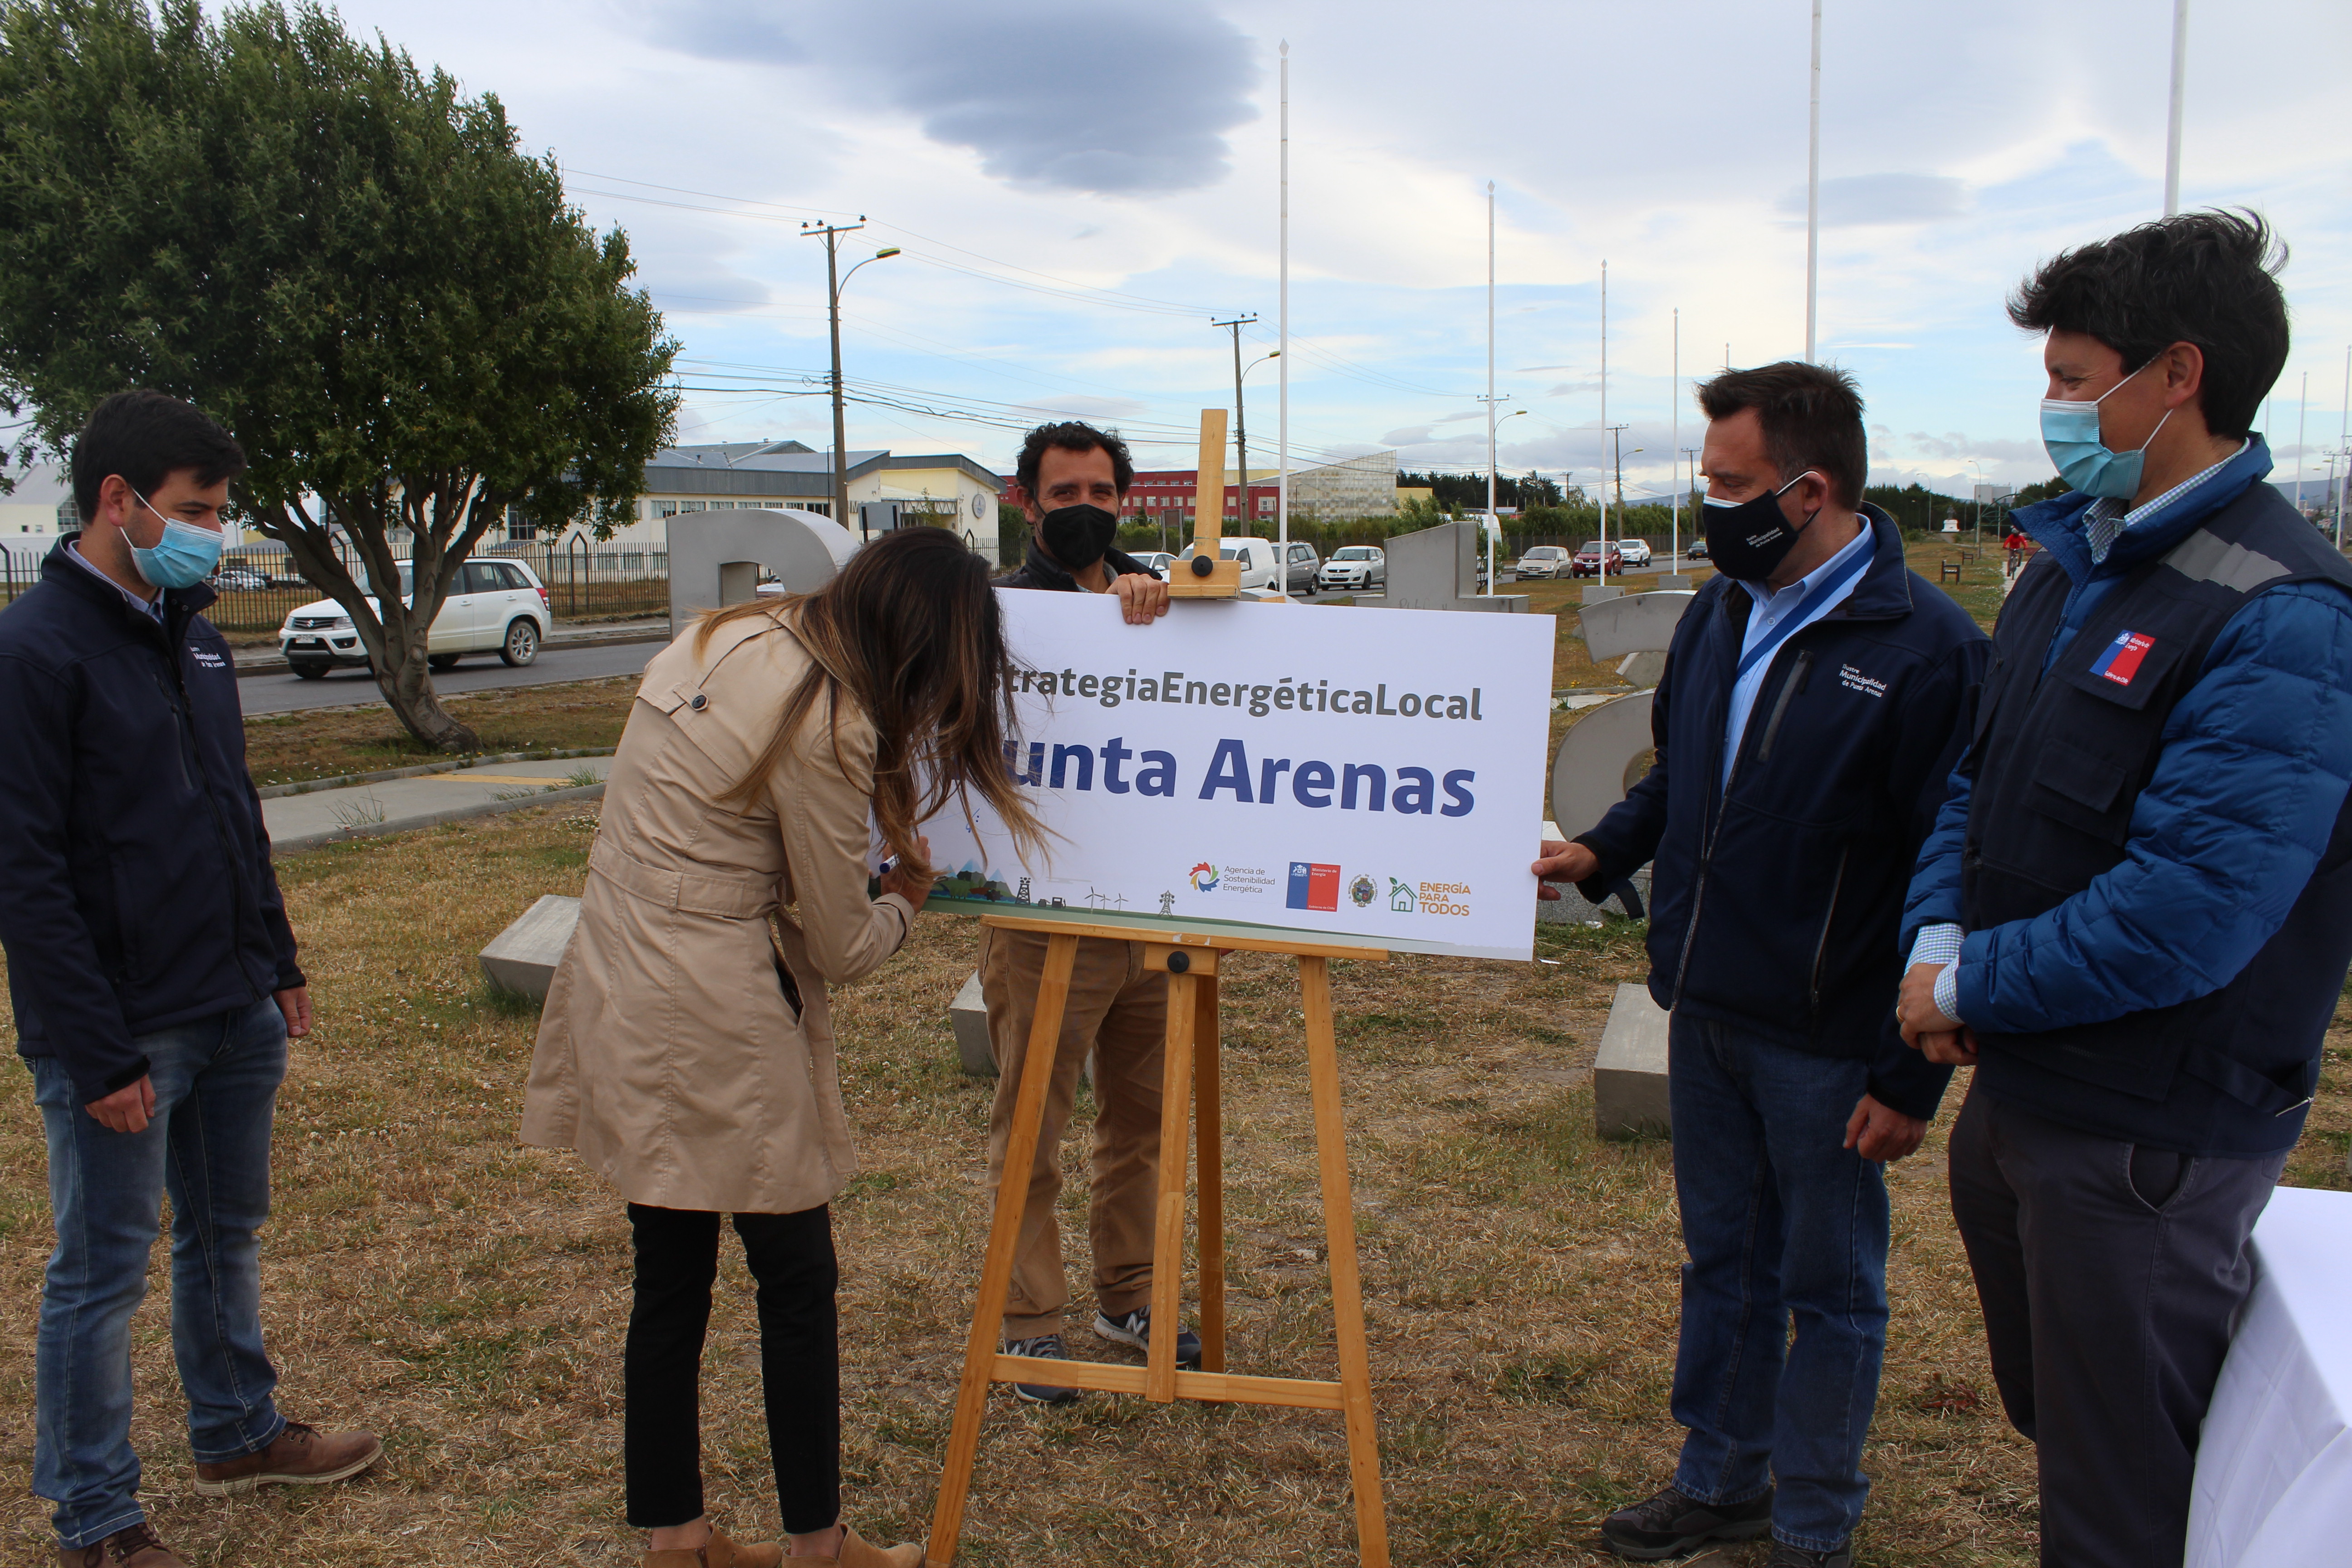 Punta Arenas lanza su Estrategia Energética Local y se alista para implementarla